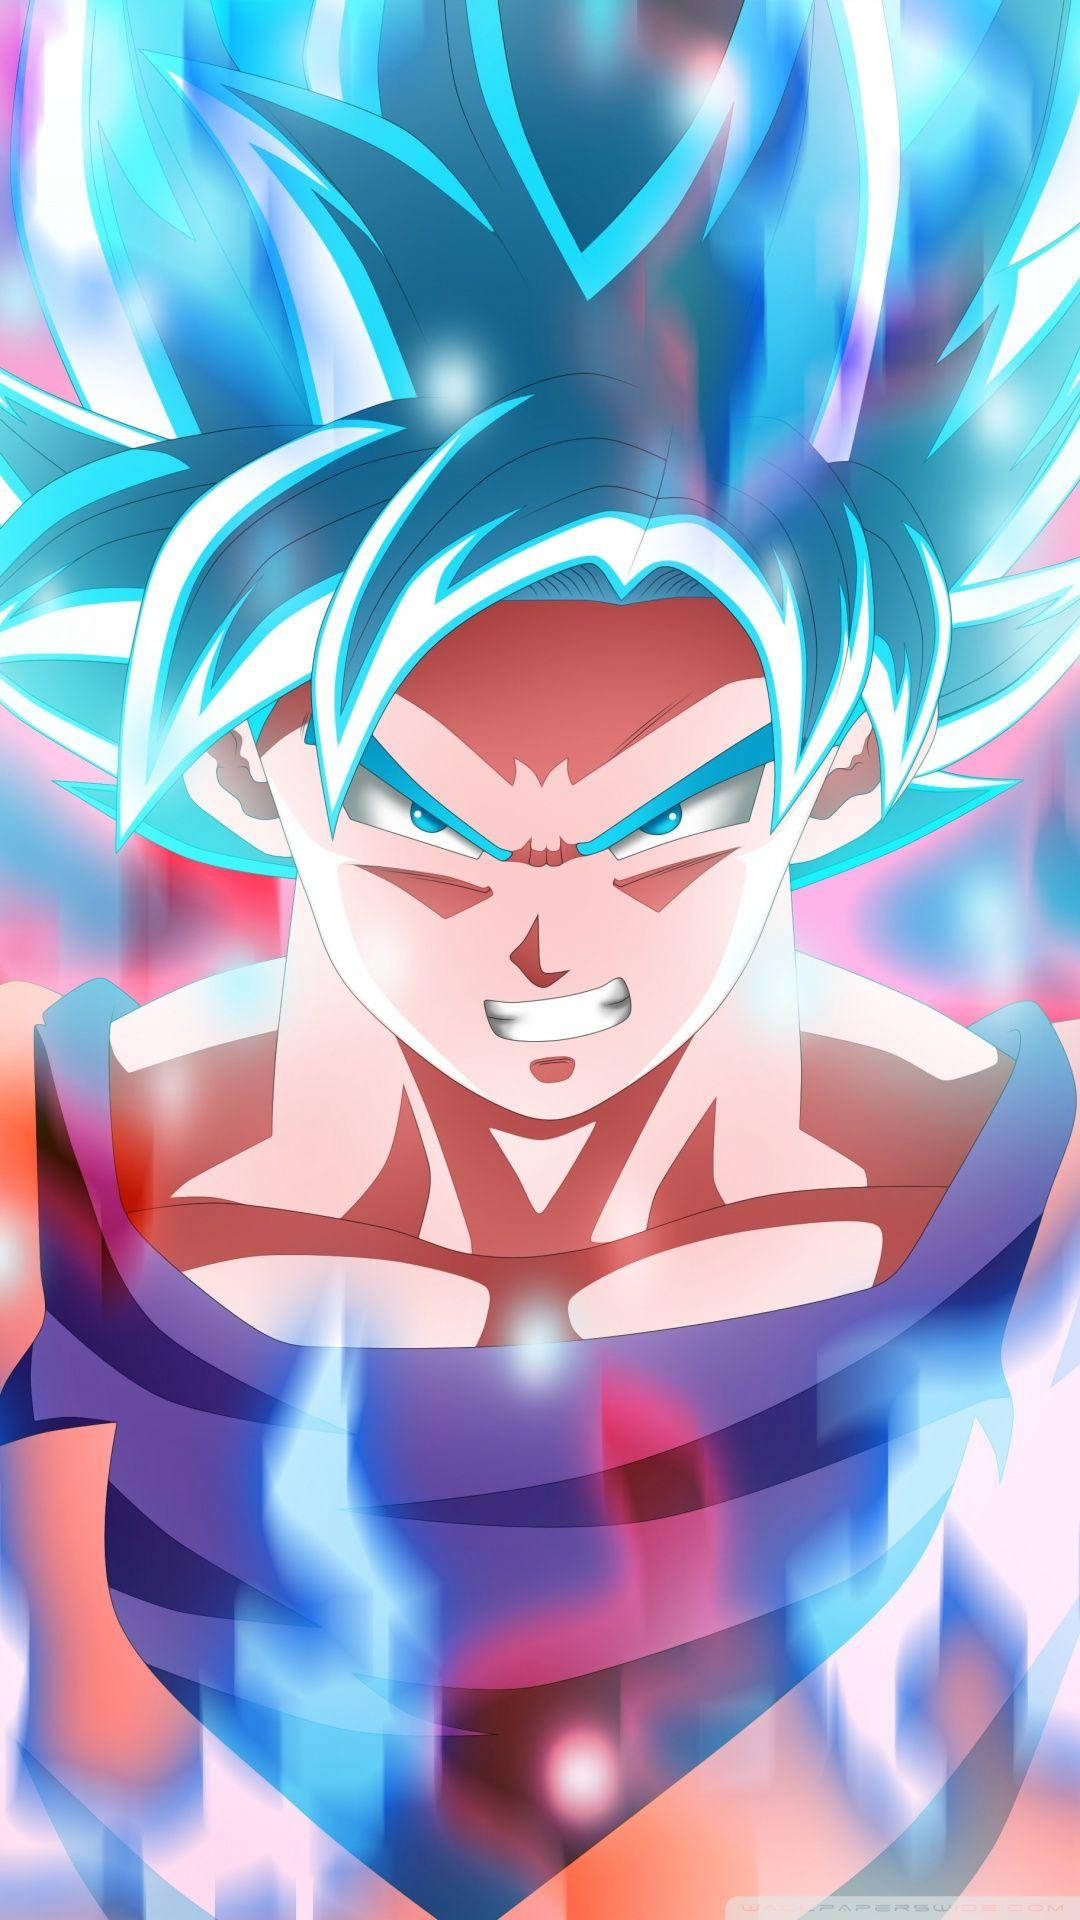 Fanart Blue Saiyan Son Goku Iphone Background